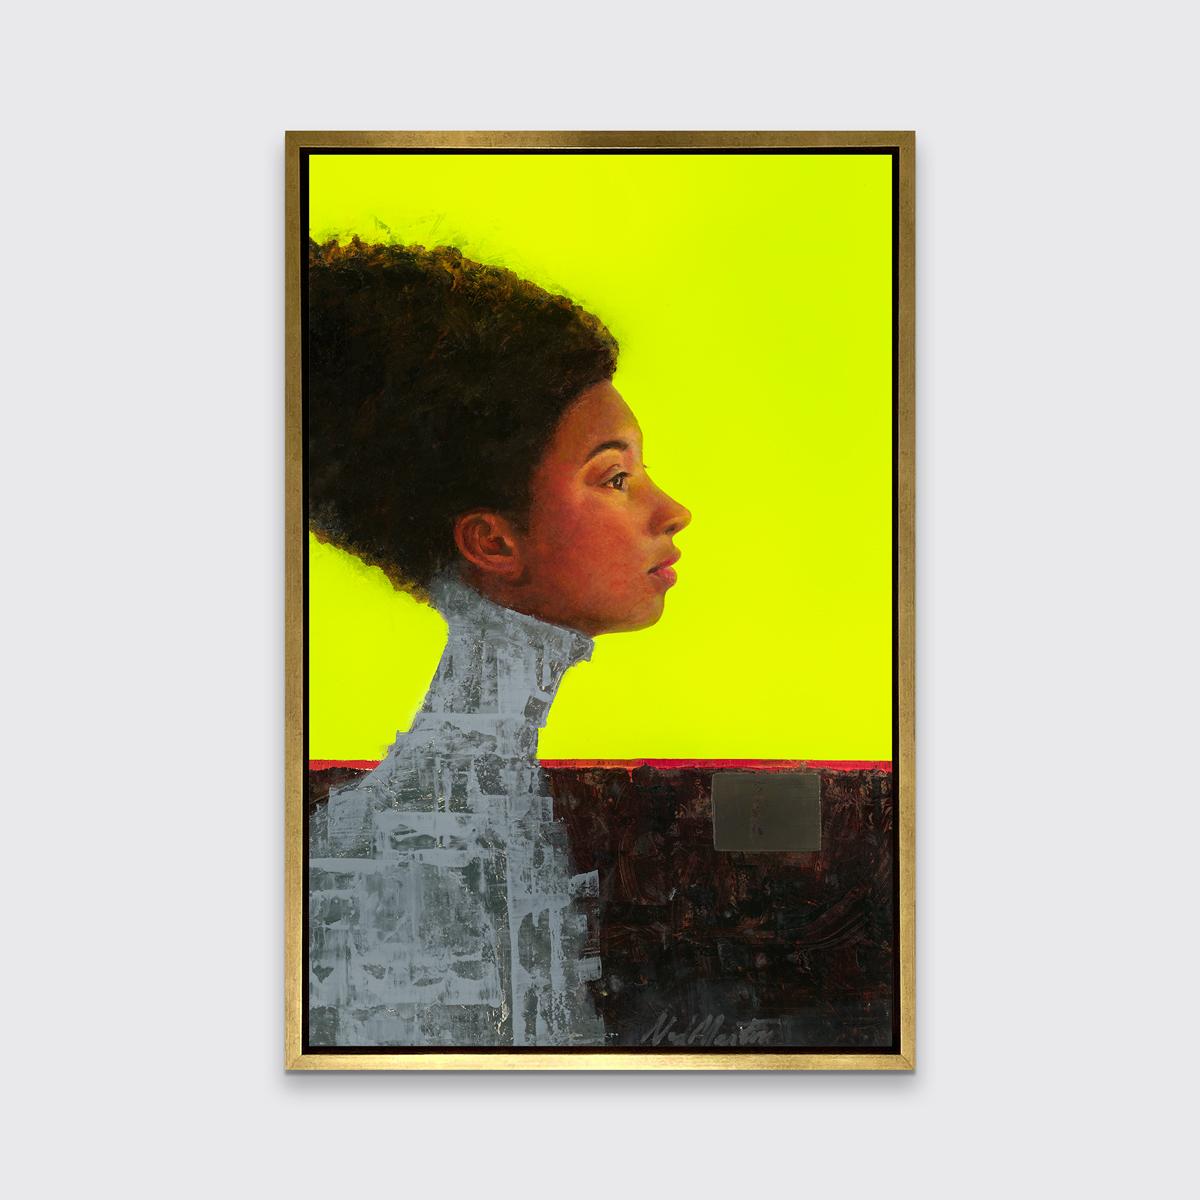 Dieser Druck in limitierter Auflage von Ned Martin ist ein zeitgenössisches abstraktes Porträt. Als Teil seiner Spirits Through Time-Serie zeigt es eine Frau im Profil - ihr Gesicht und ihr Haar sind realistisch dargestellt, während Hals und